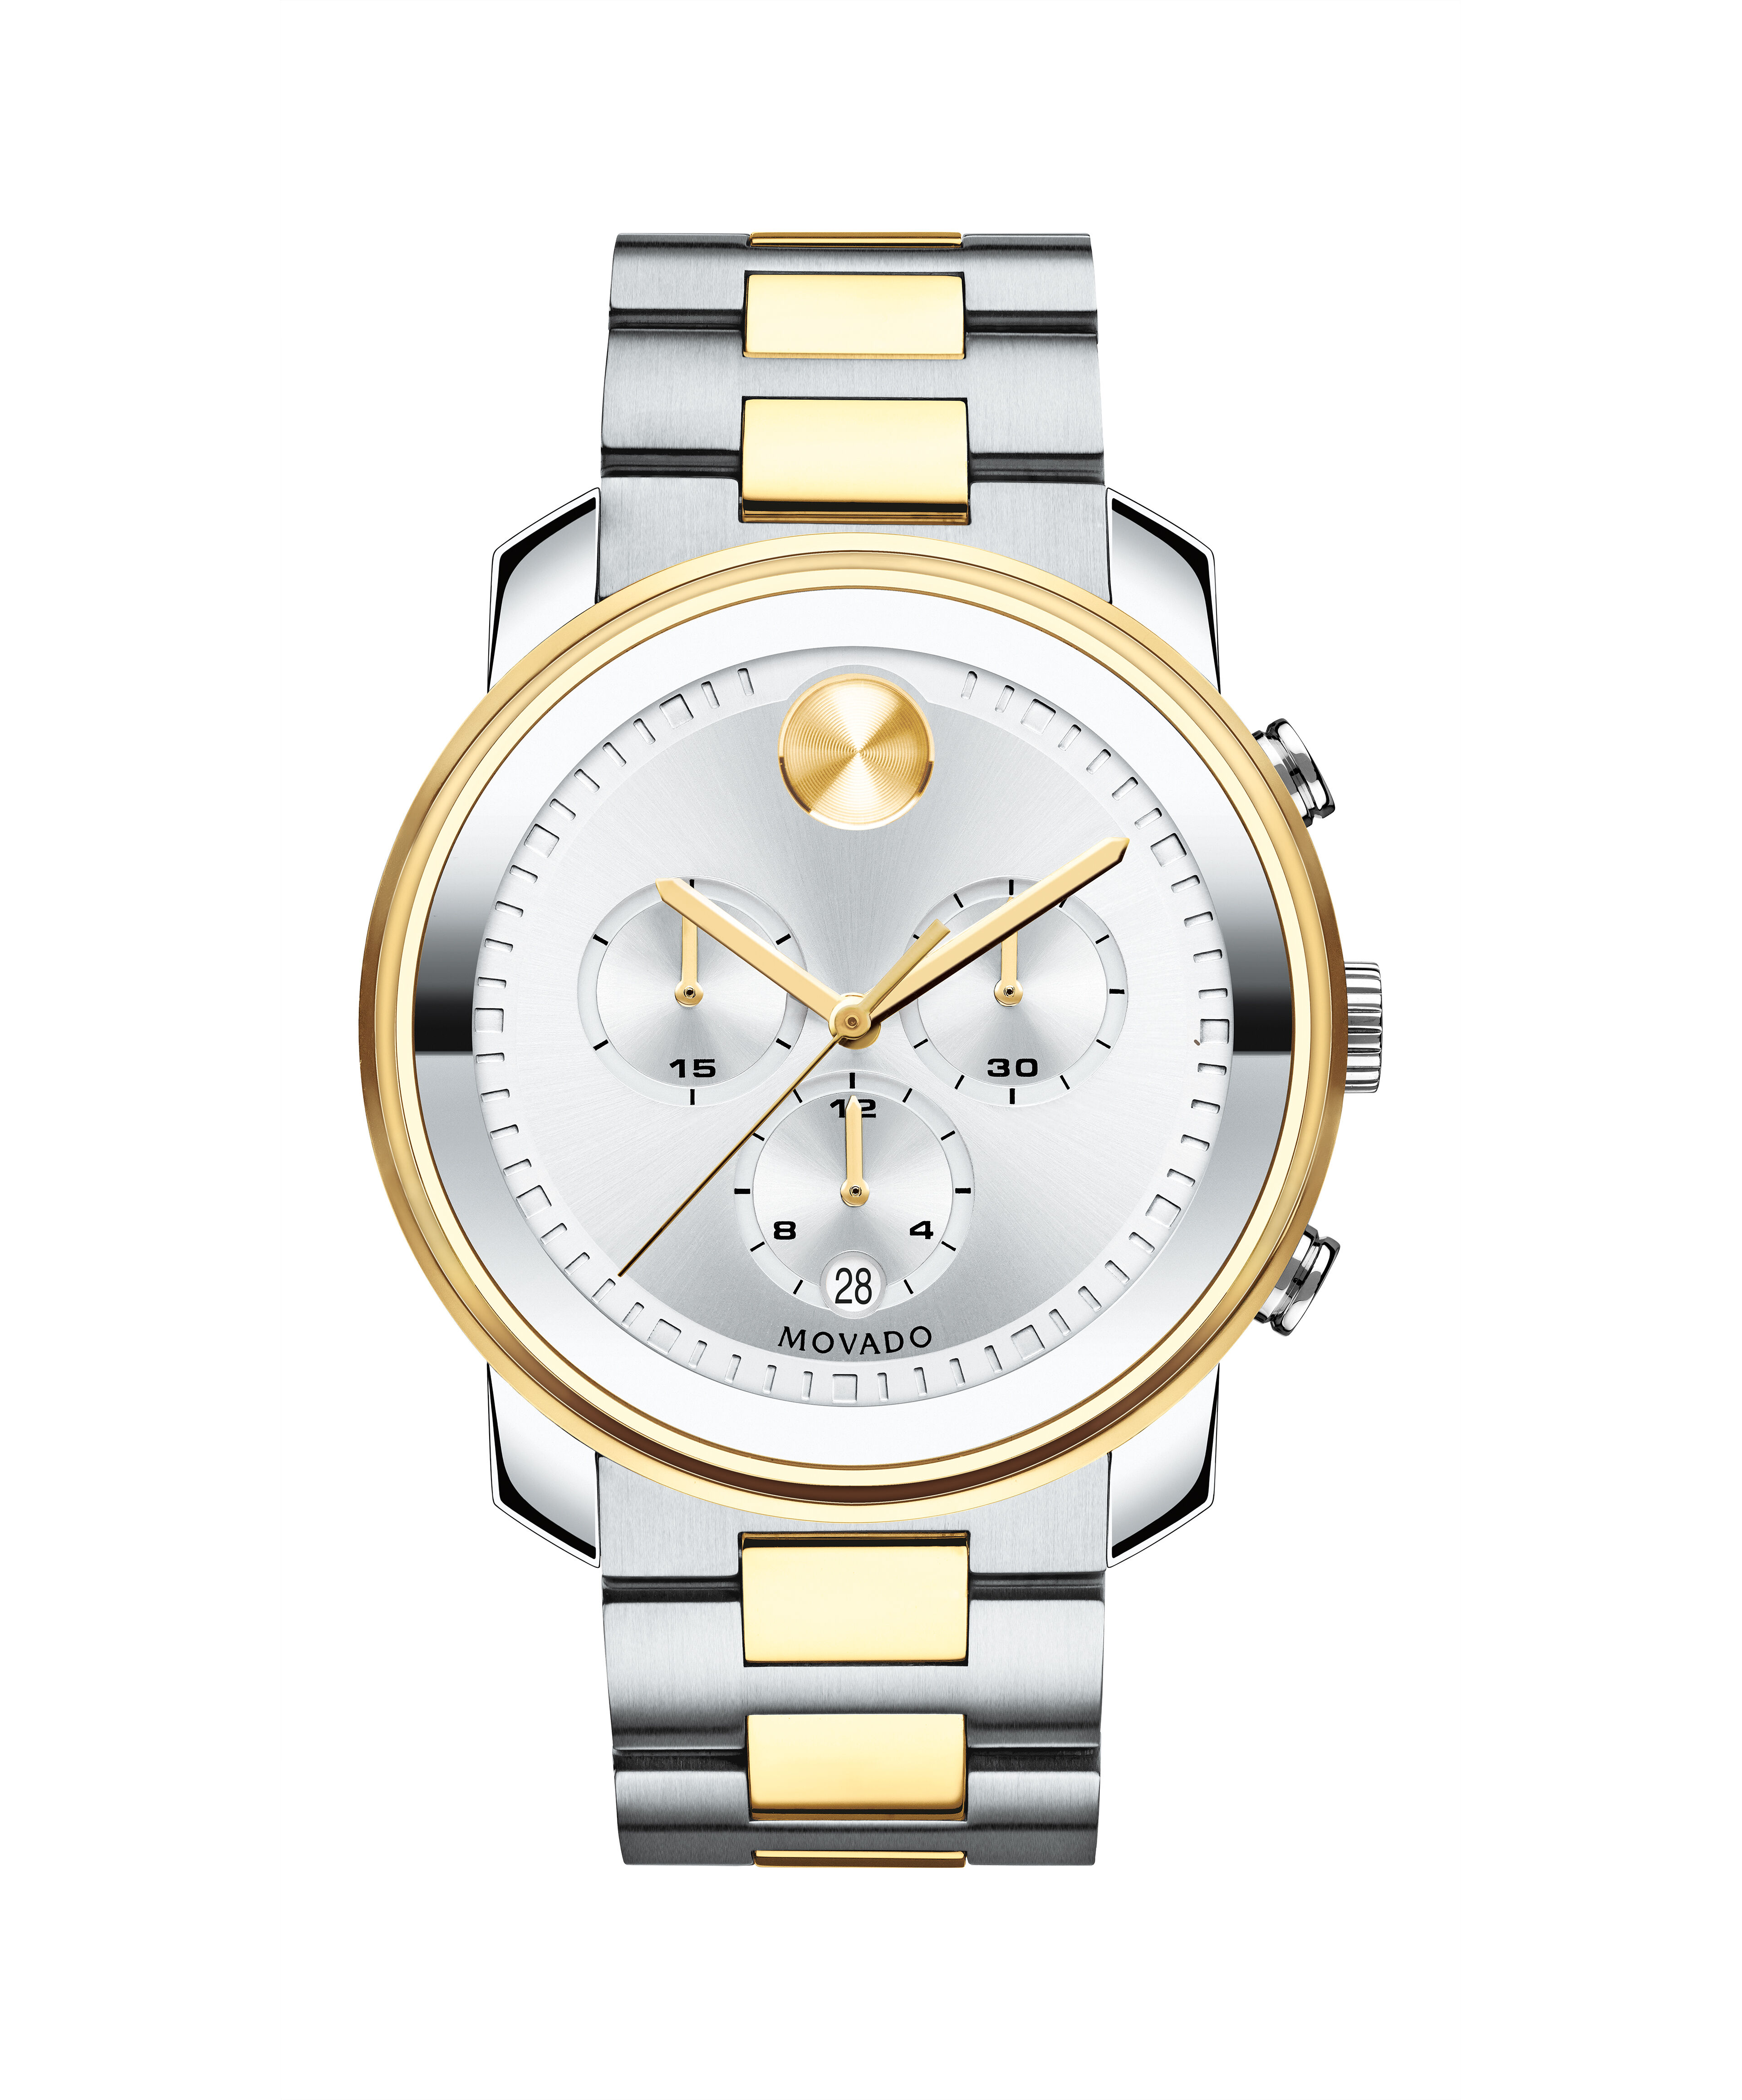 Best Website To Buy Replica Watches